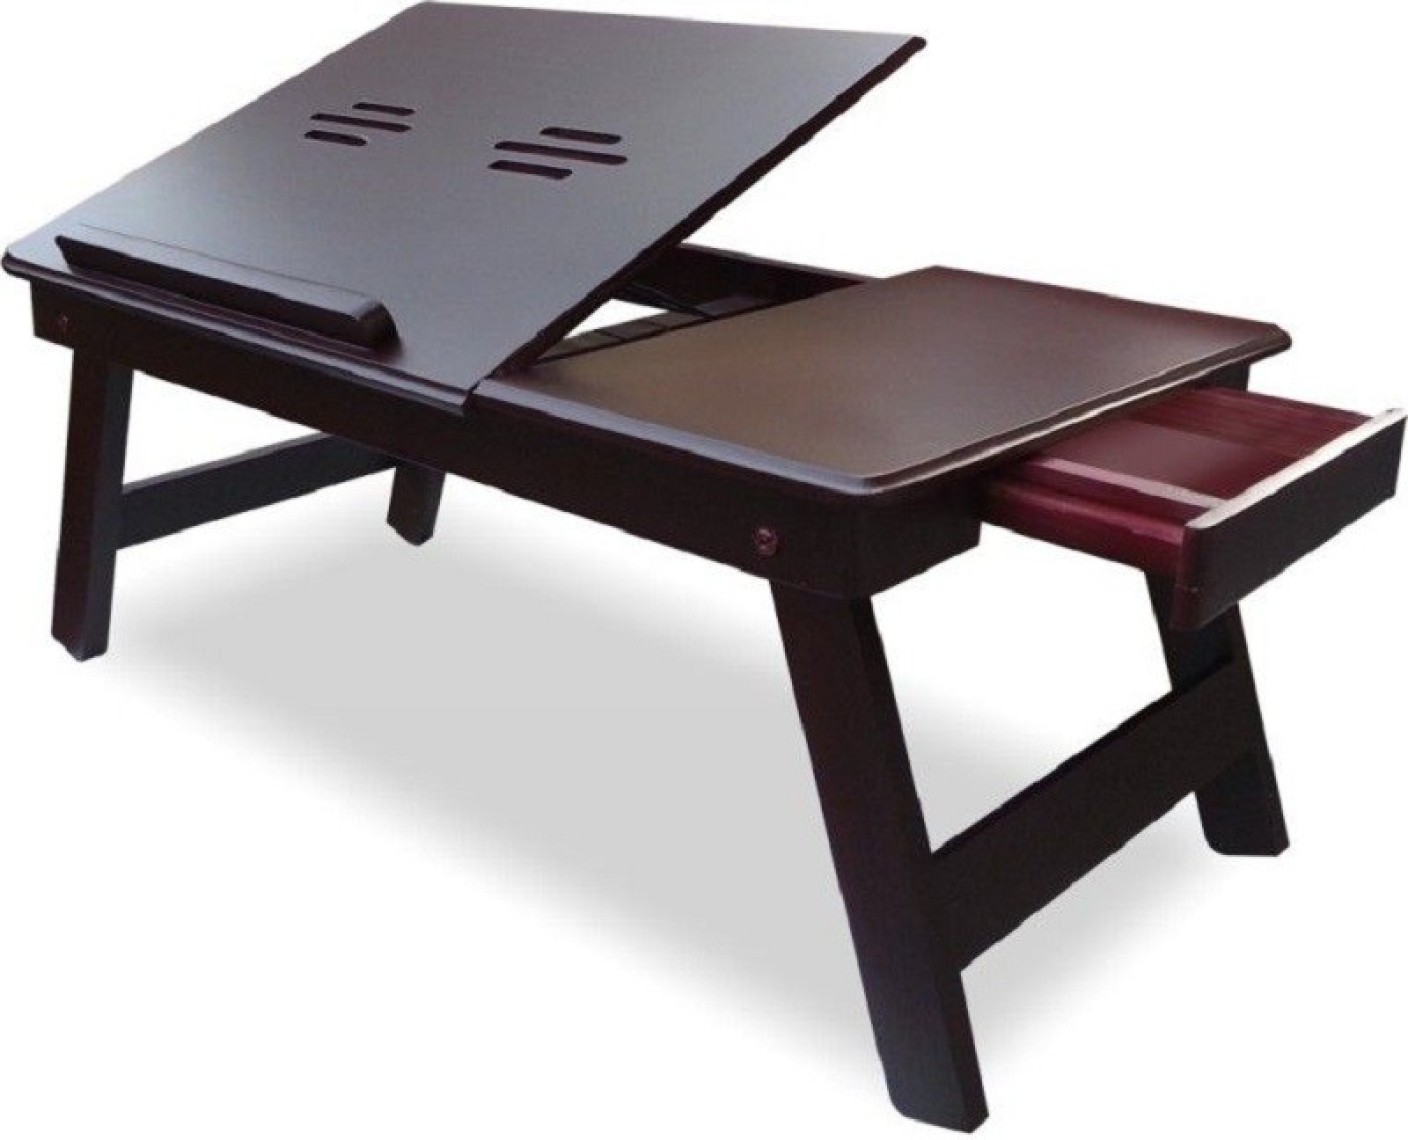  Table  Mate  II  Adjustable Engineered Wood Portable  Laptop  